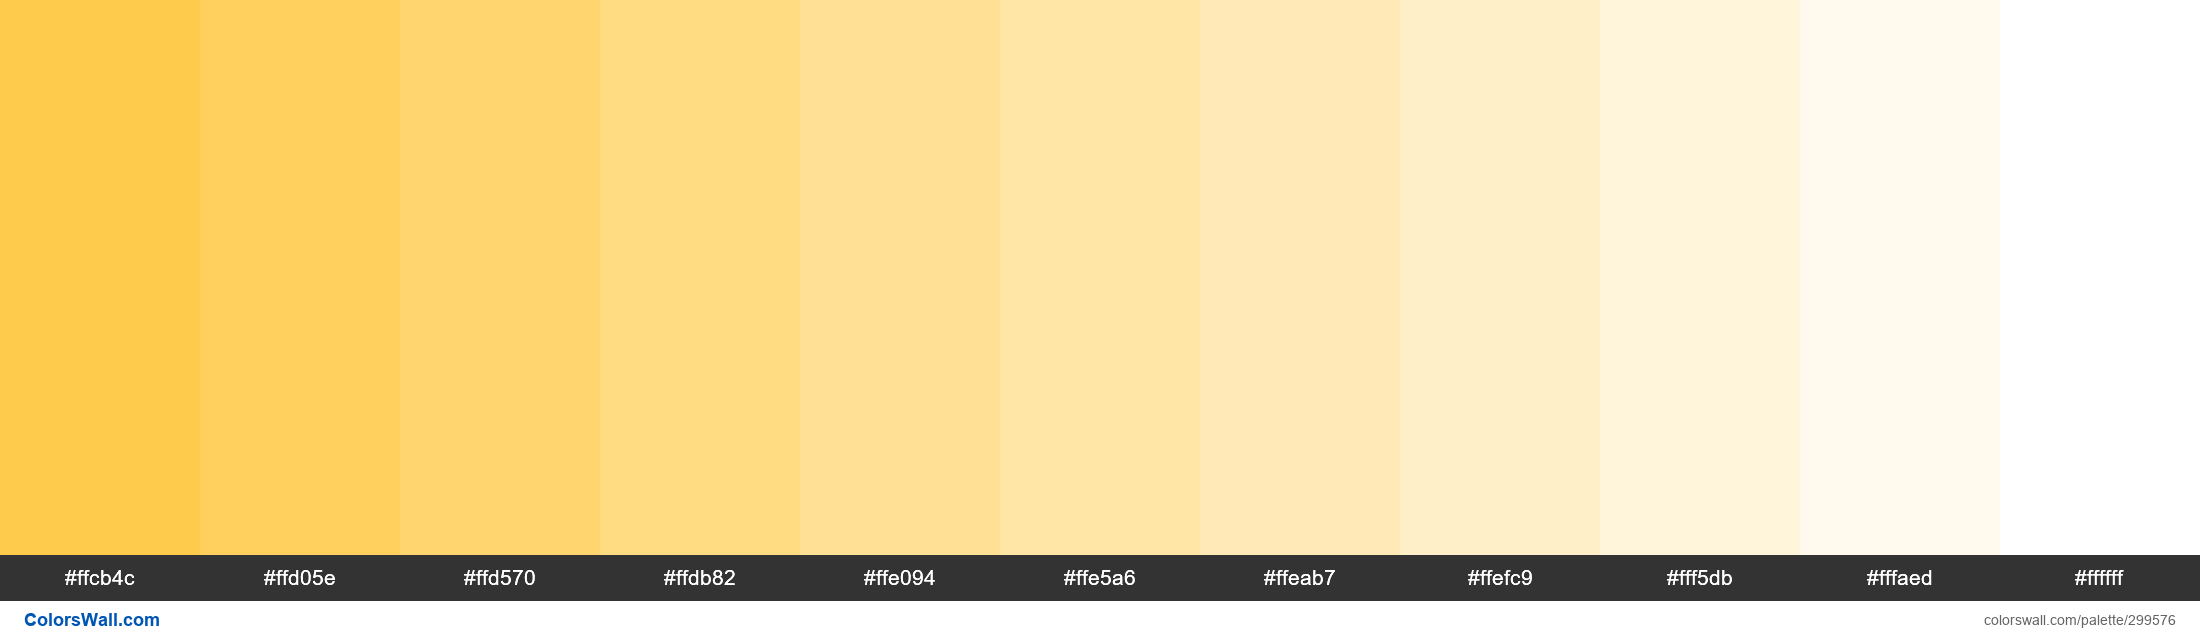 Vivid Emoji colors palette - ColorsWall